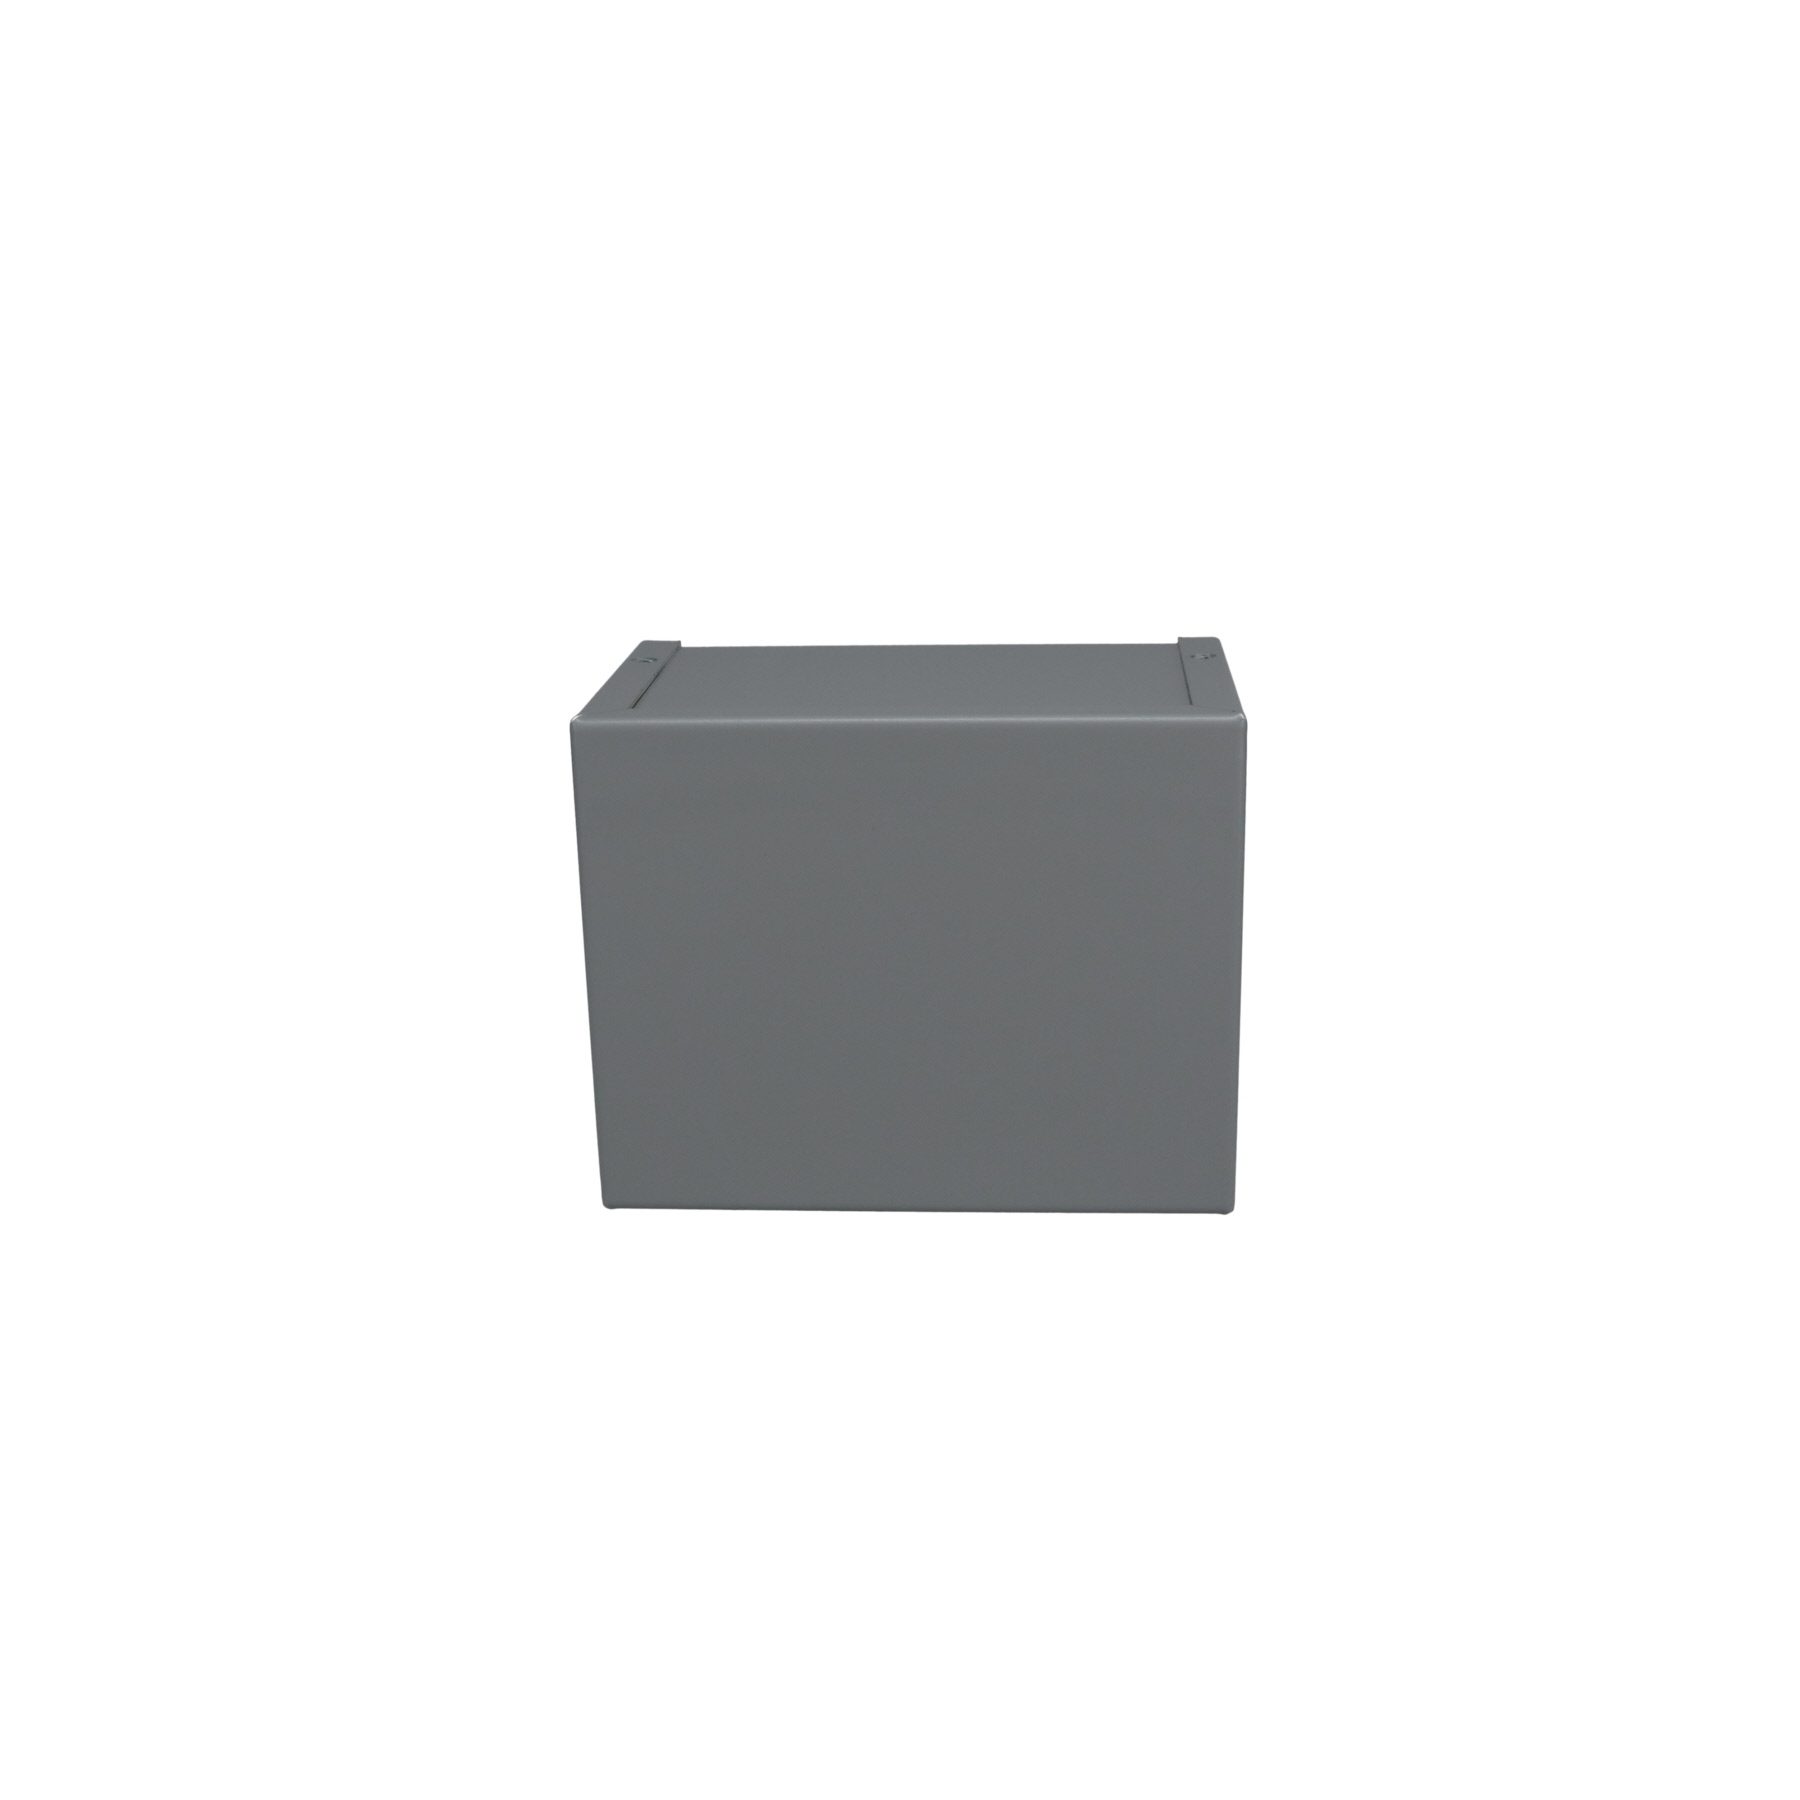 Minibox Small Metal Box Gray CU-2105-B